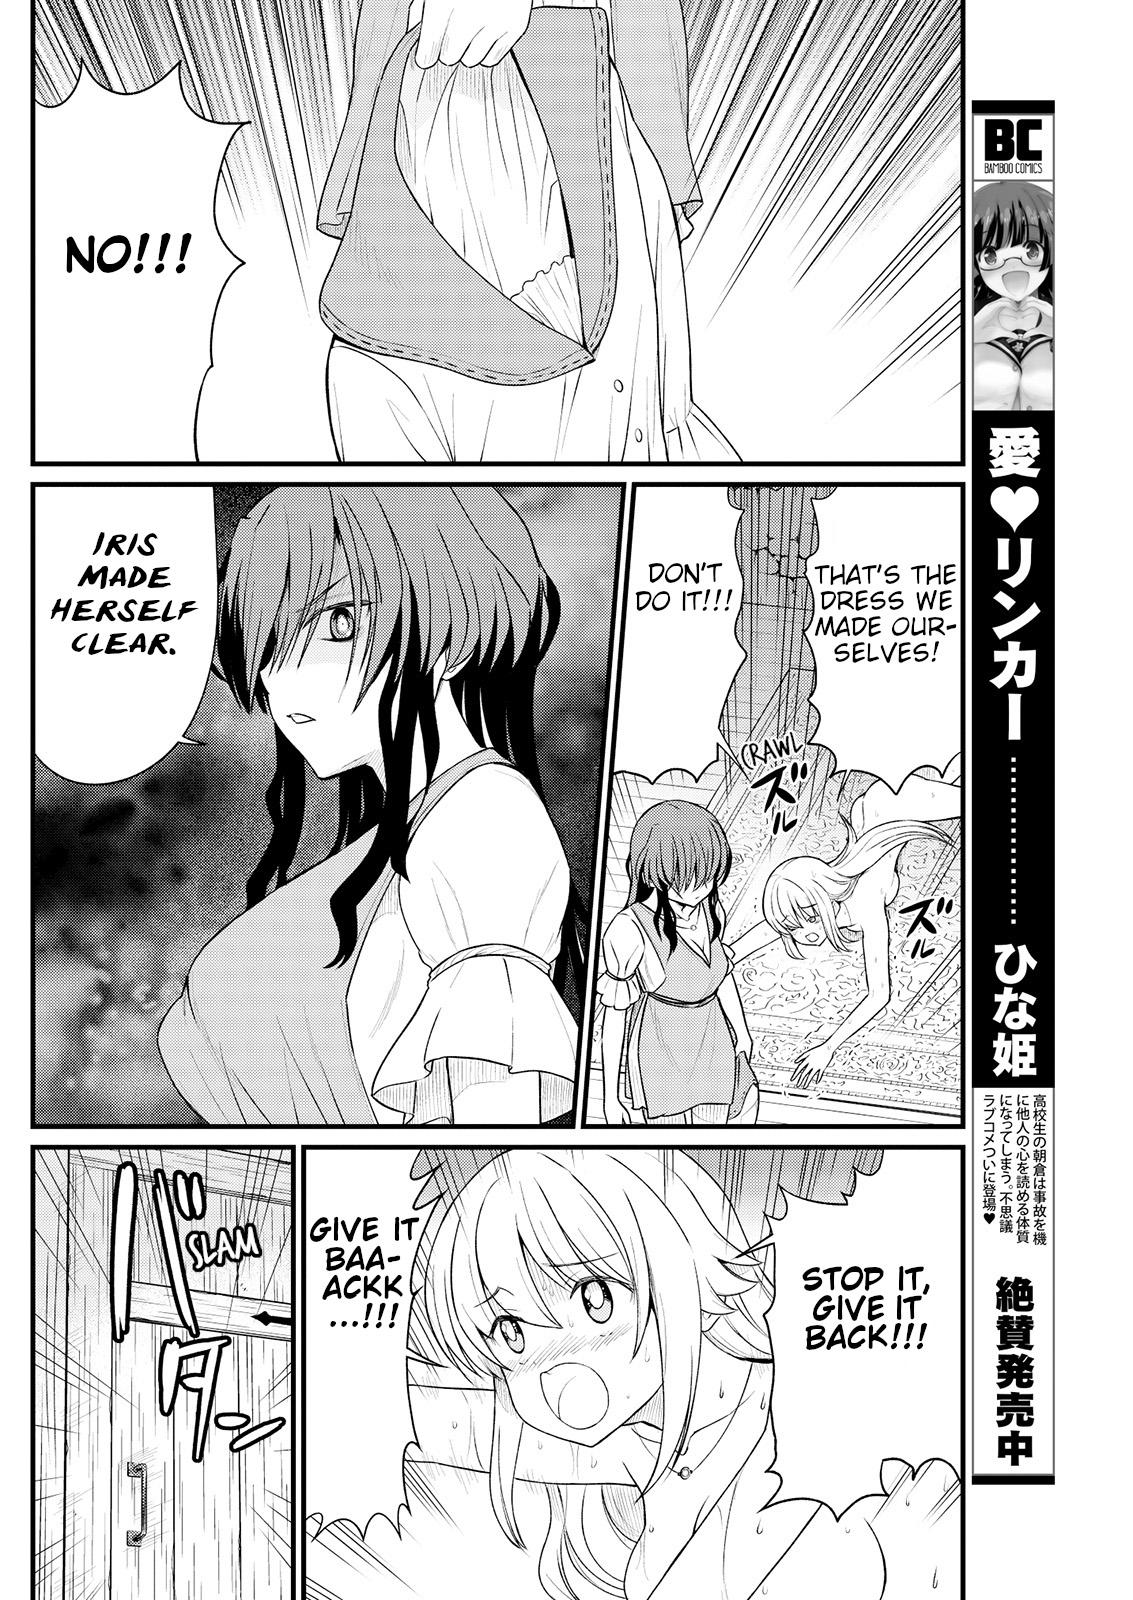 Hot Girl Kukkorose no Himekishi to nari, Yuri Shoukan de Hataraku koto ni Narimashita. 9 | Becoming Princess Knight and Working at Yuri Brothel 9 Perfect Teen - Page 8